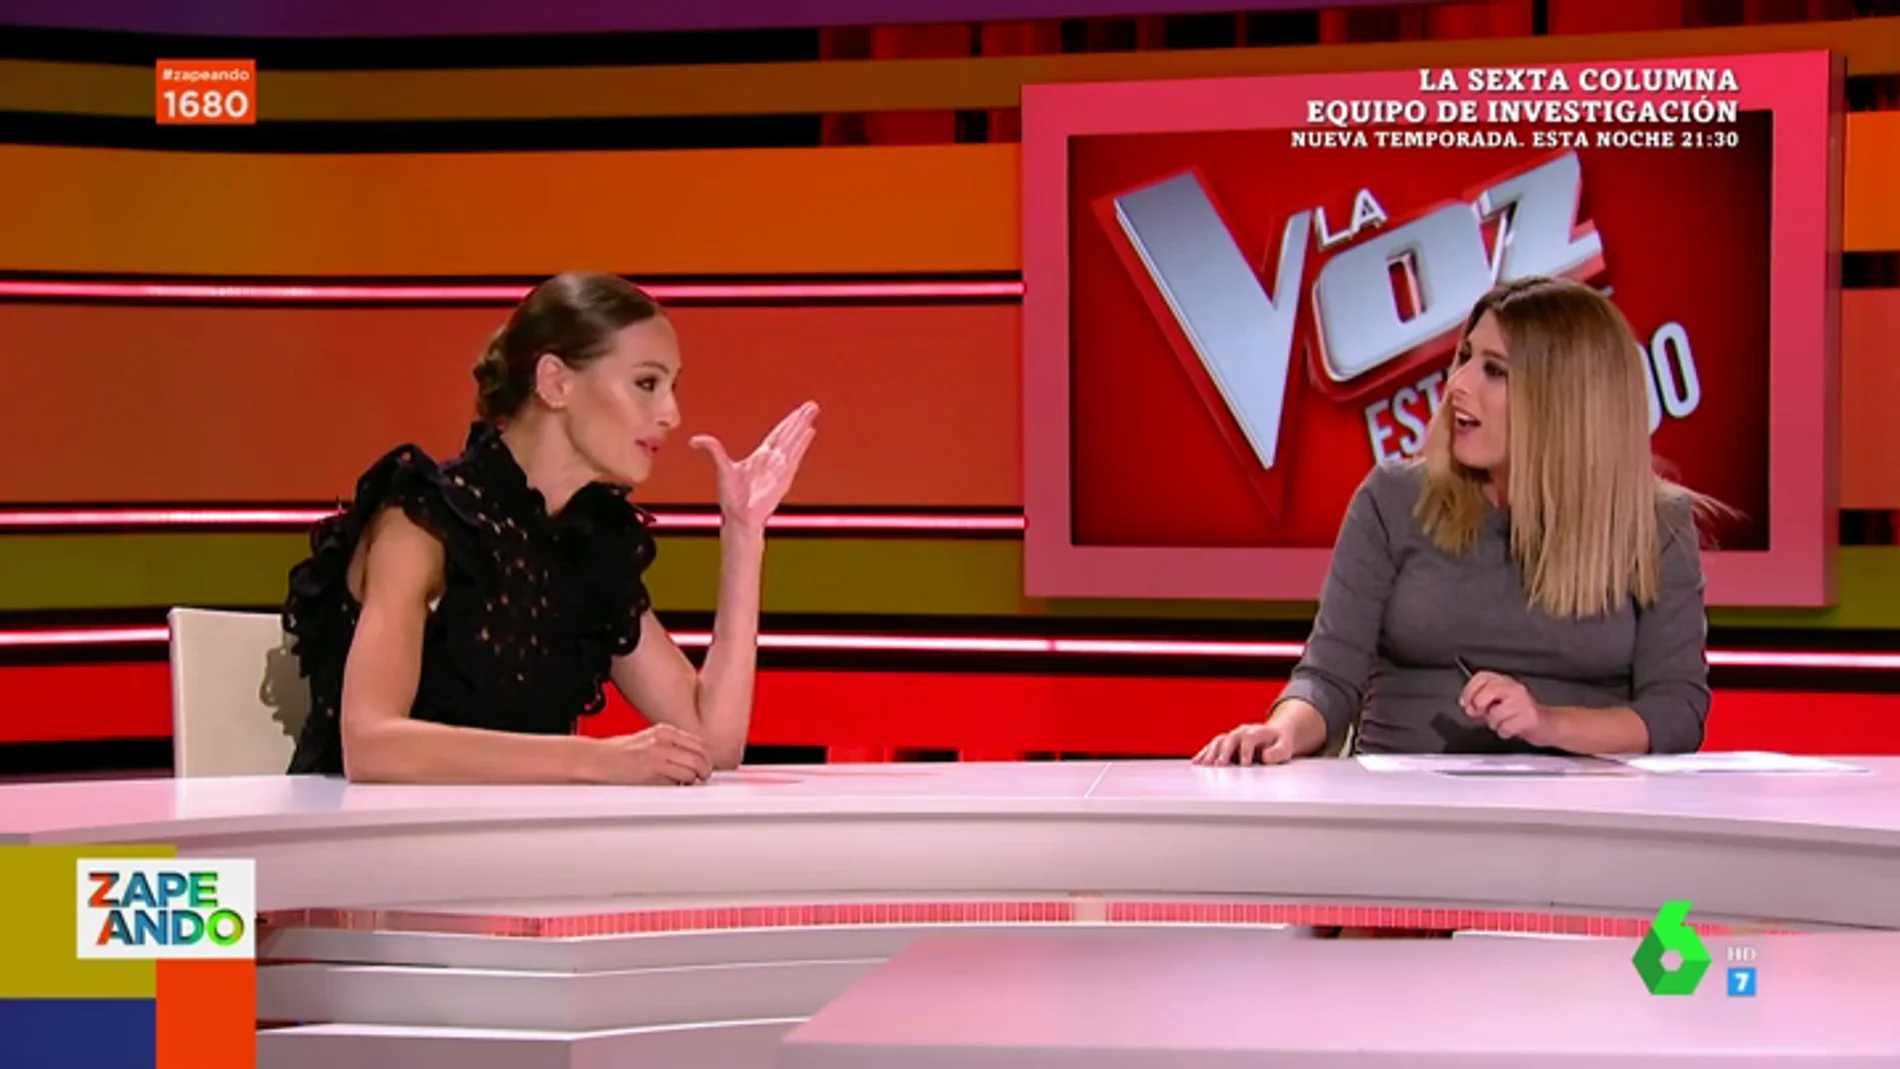 La pregunta de Valeria Ros que pone en apuros a Eva González en directo: "Perdón, no quería ponerte en un compromiso"